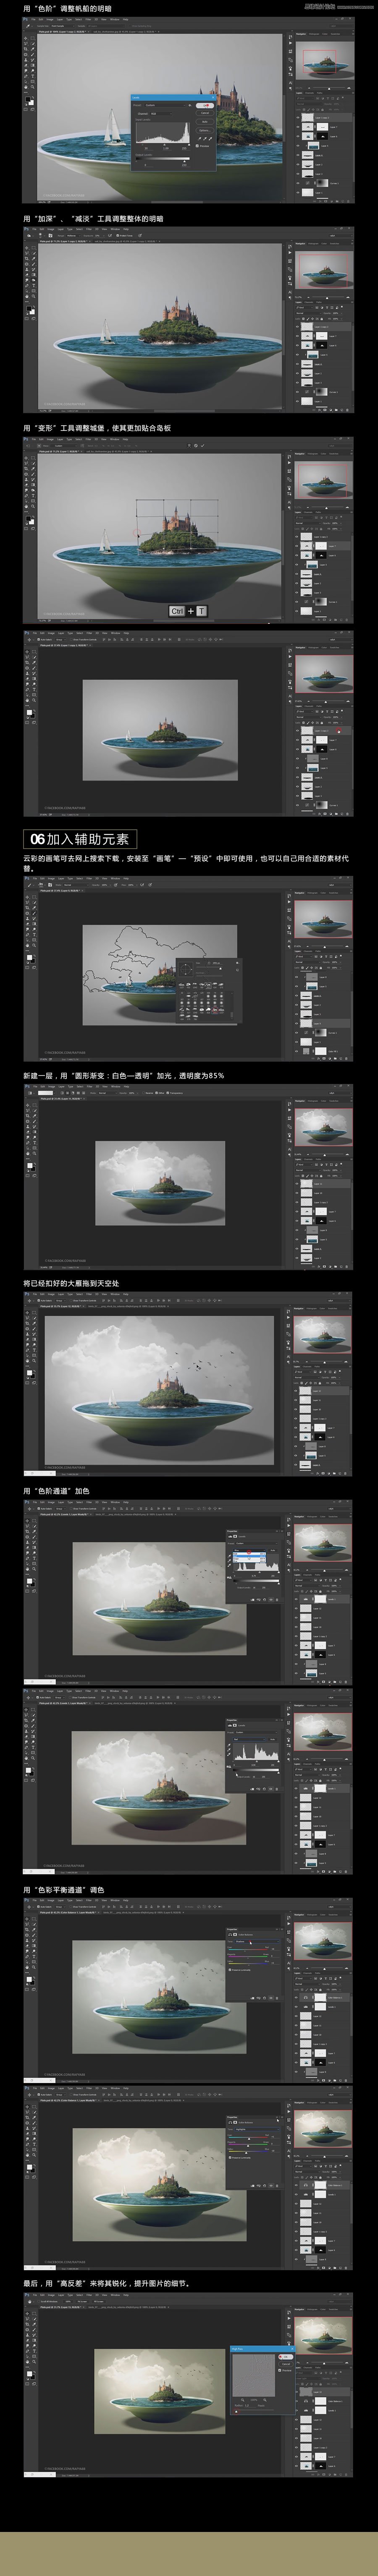 Photoshop创意合成在盘子里的海盗效果图,PS教程,素材中国网